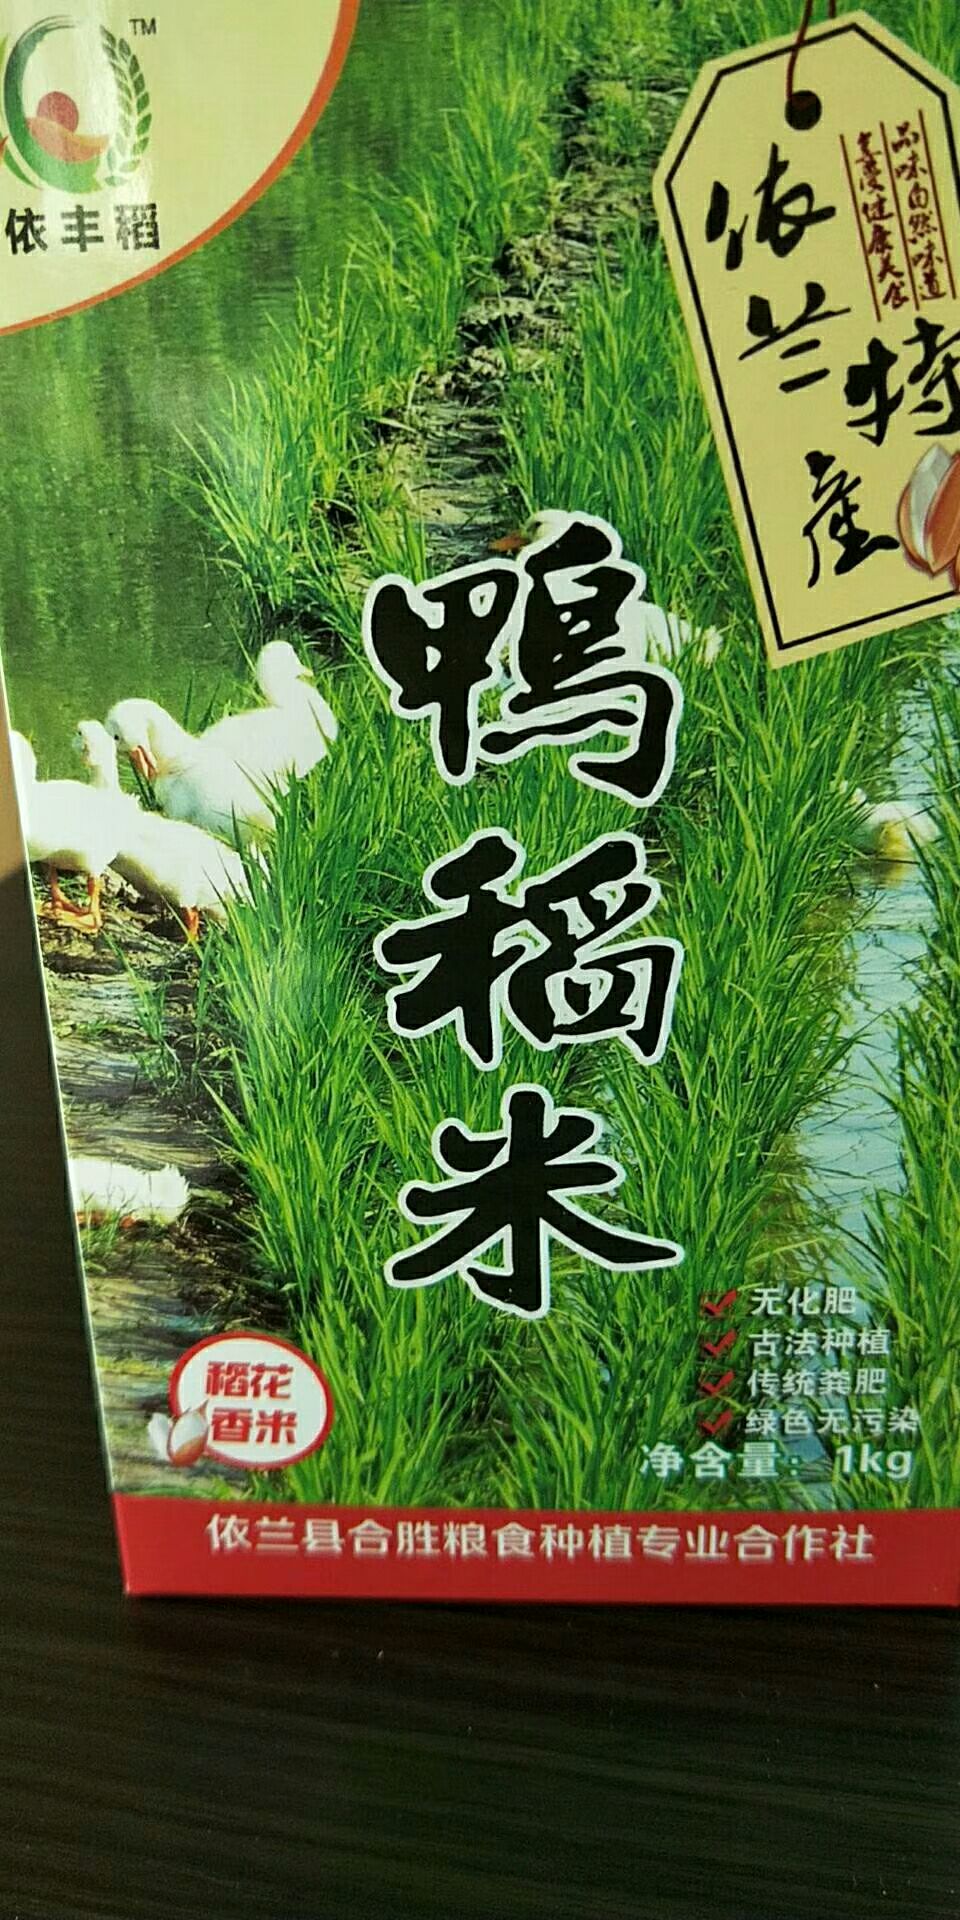 依兰县稻花香二号大米 一等品 晚稻 粳米 